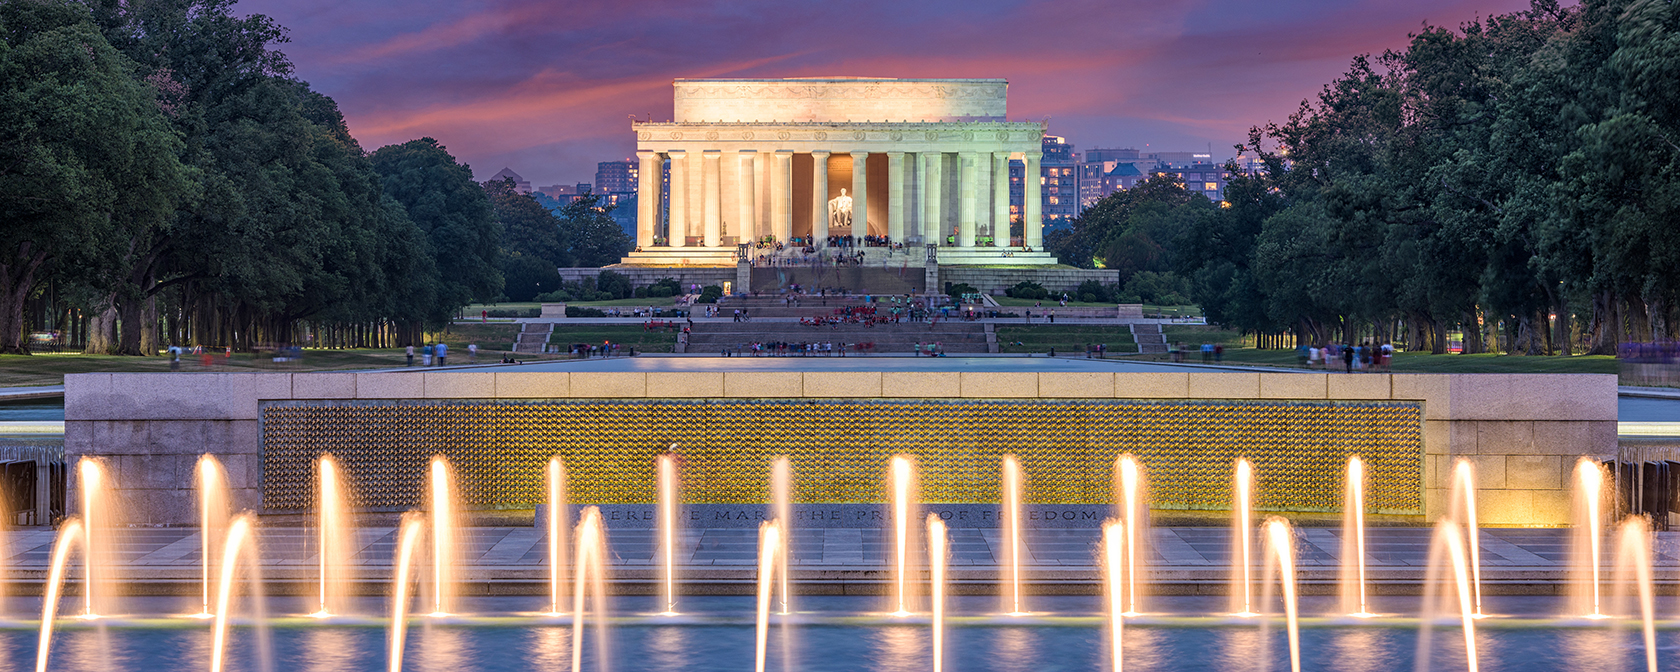 Monumento a Lincoln de noche